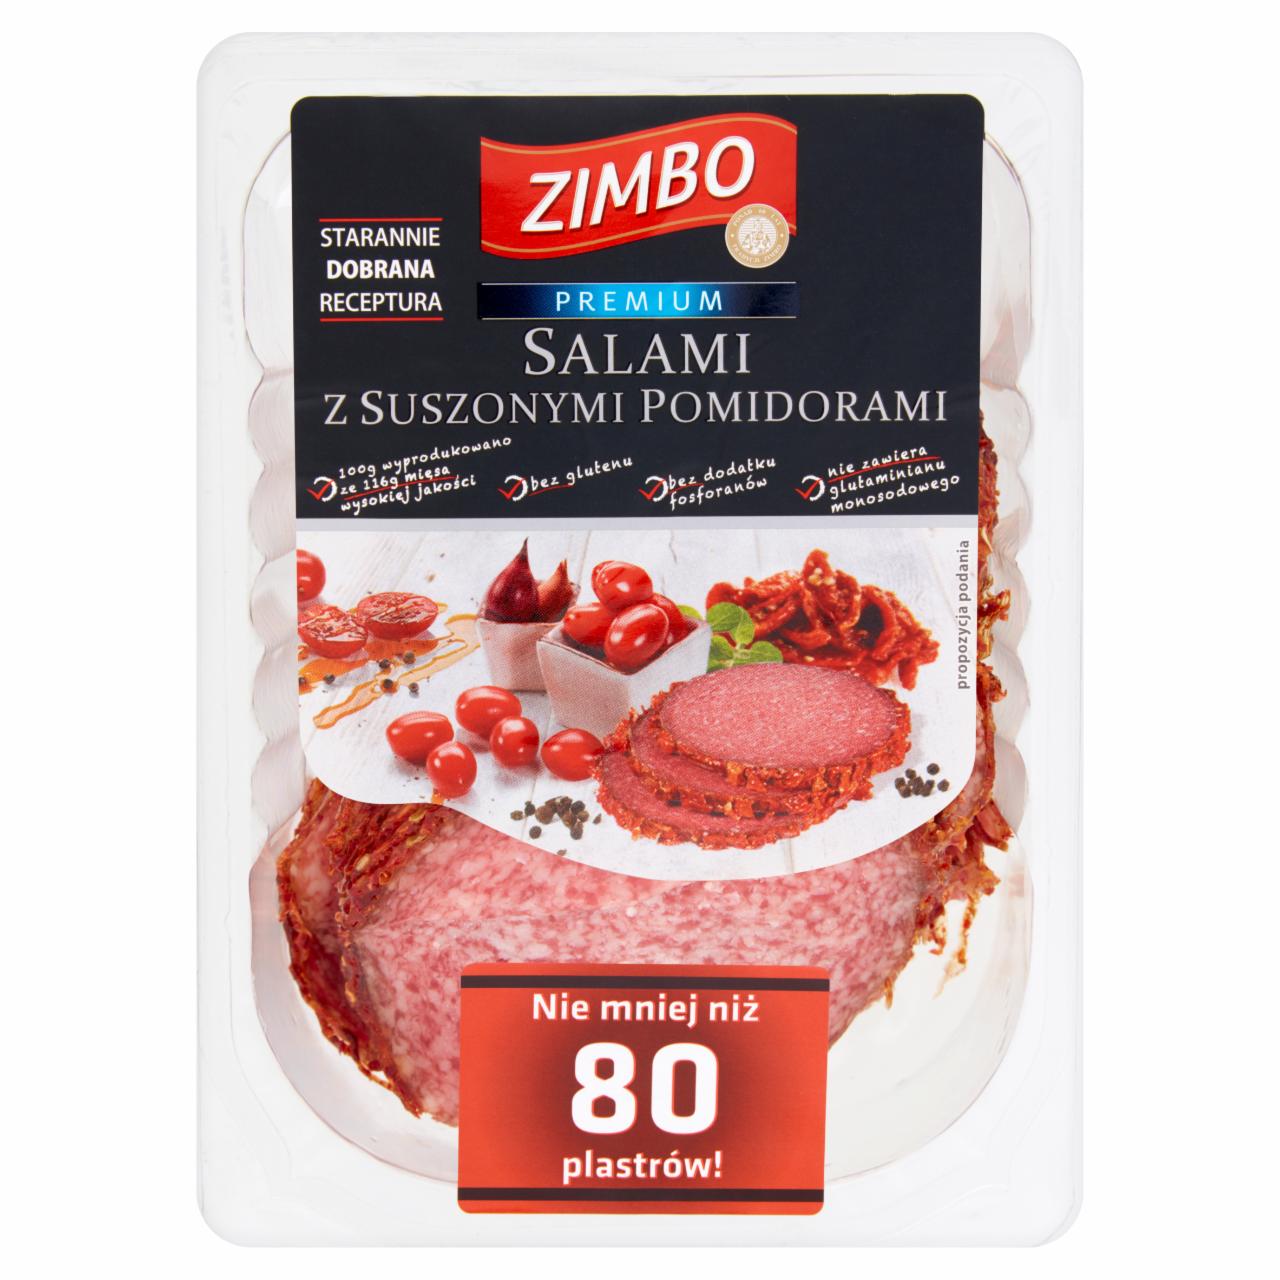 Zdjęcia - Zimbo Premium Salami z suszonymi pomidorami 500 g